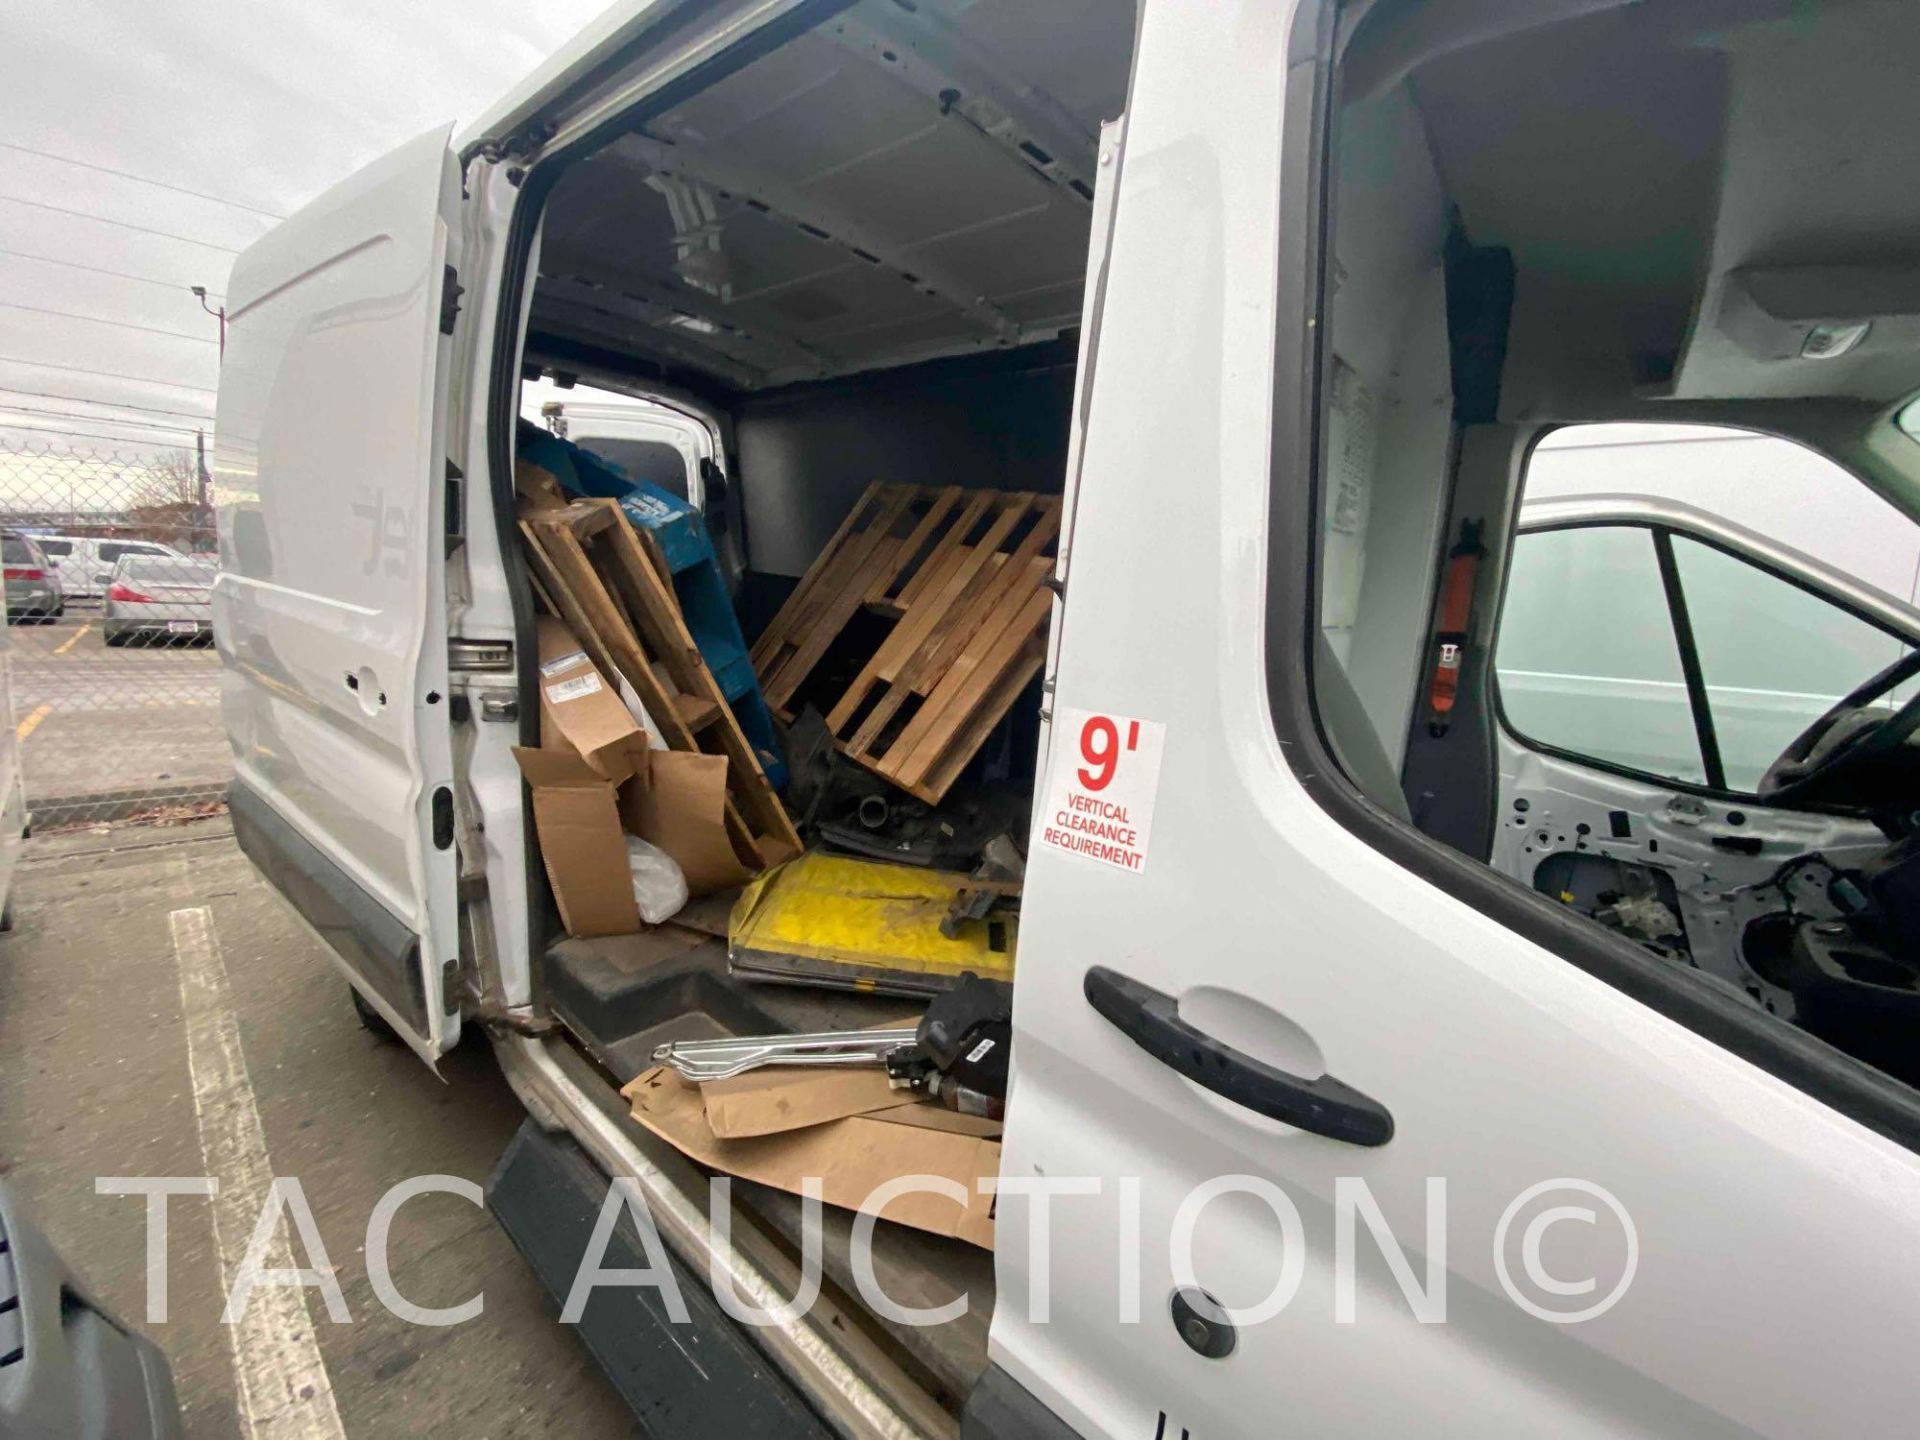 2019 Ford Transit 150 Cargo Van - Image 43 of 76